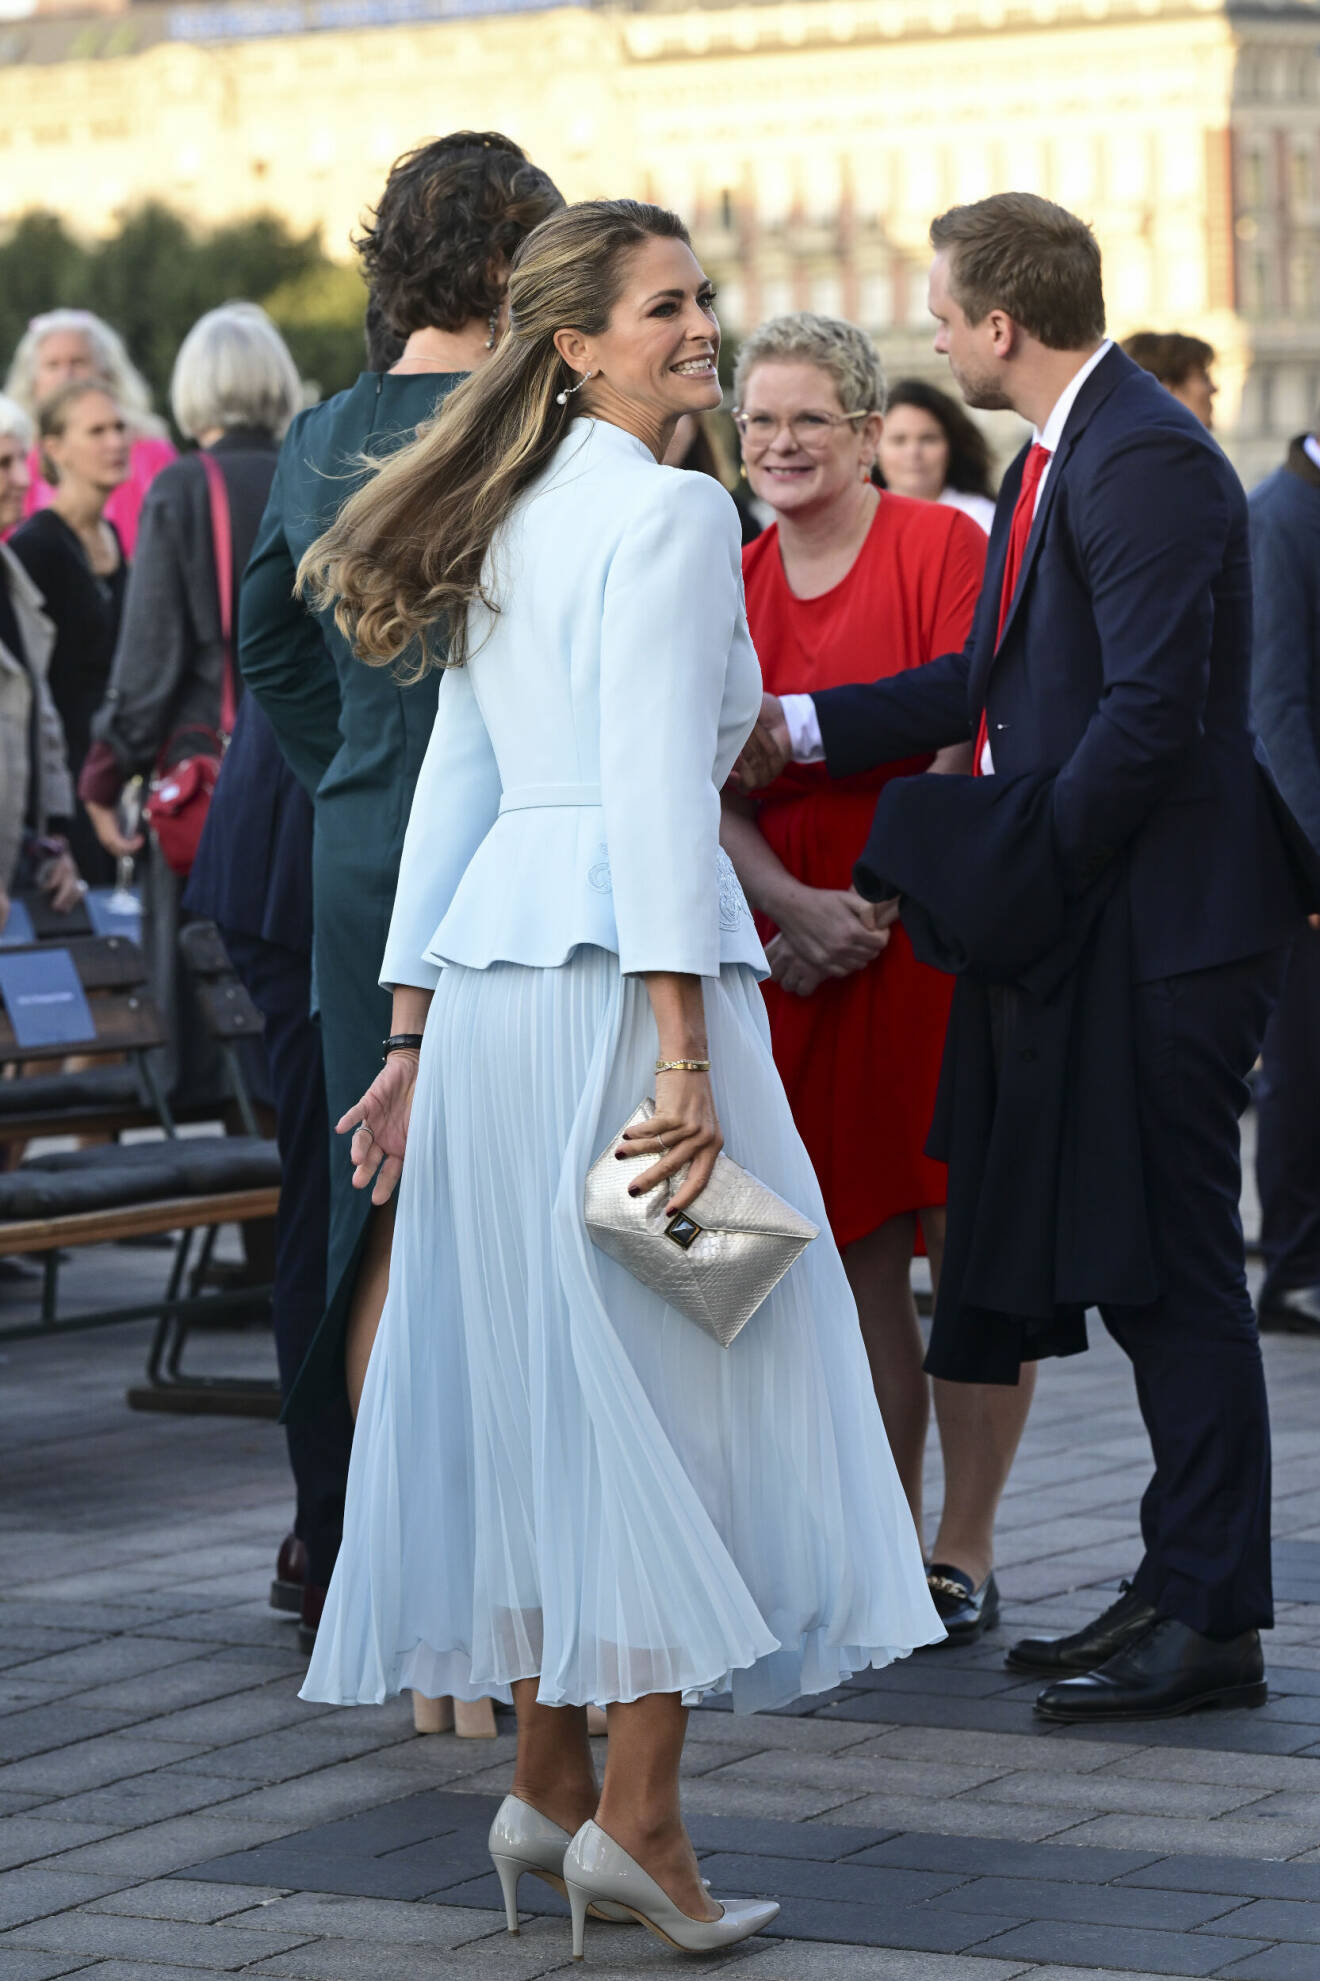 Prinsessan Madeleine vid firandet när Stockholm stad arrangerar en jubileumskonsert på Norrbro under lördagen i samband med kung Carl XVI Gustafs 50-årsjubileum på tronen.